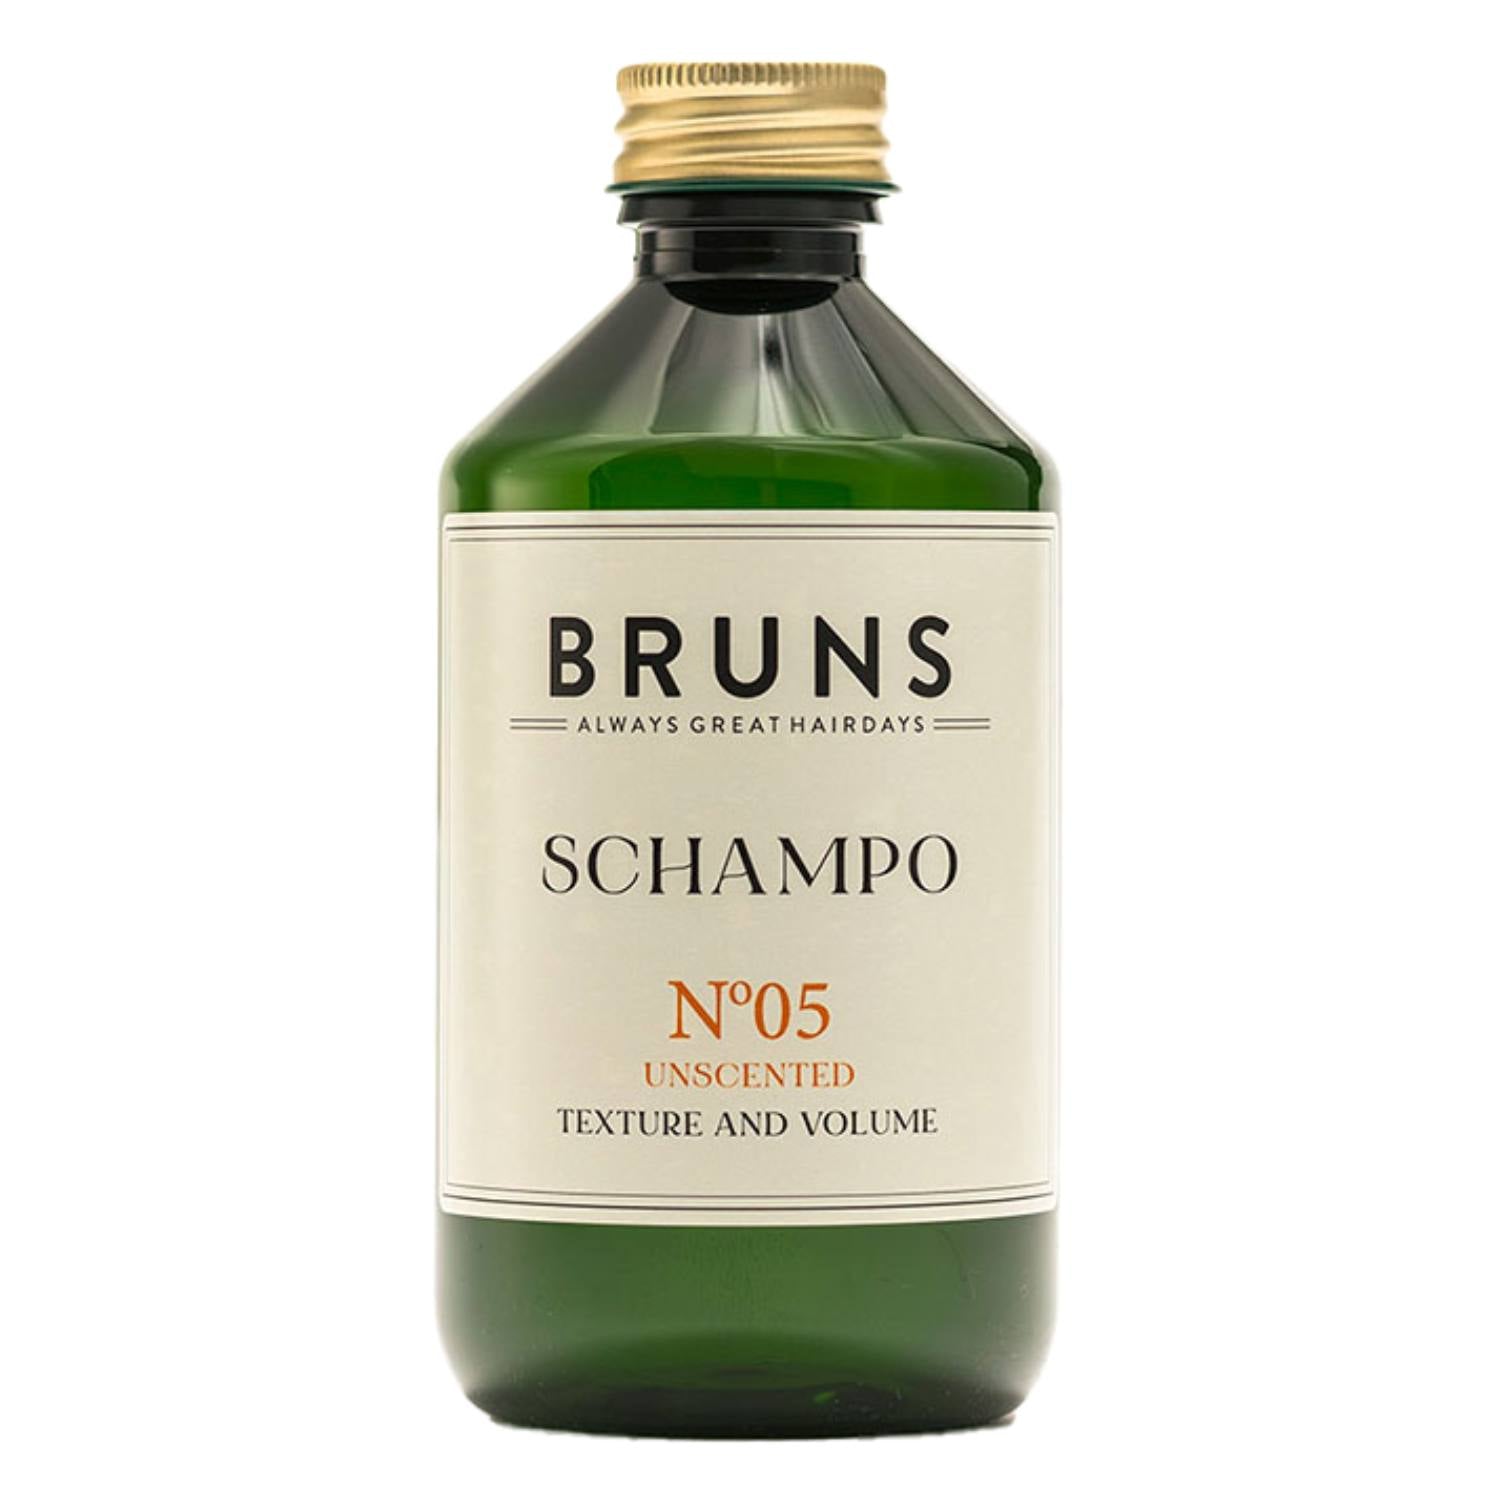 Se Shampoo Bruns Nº 05, 300 ml. - Shampoo fra Bruns hos Astma Allergi Shoppen